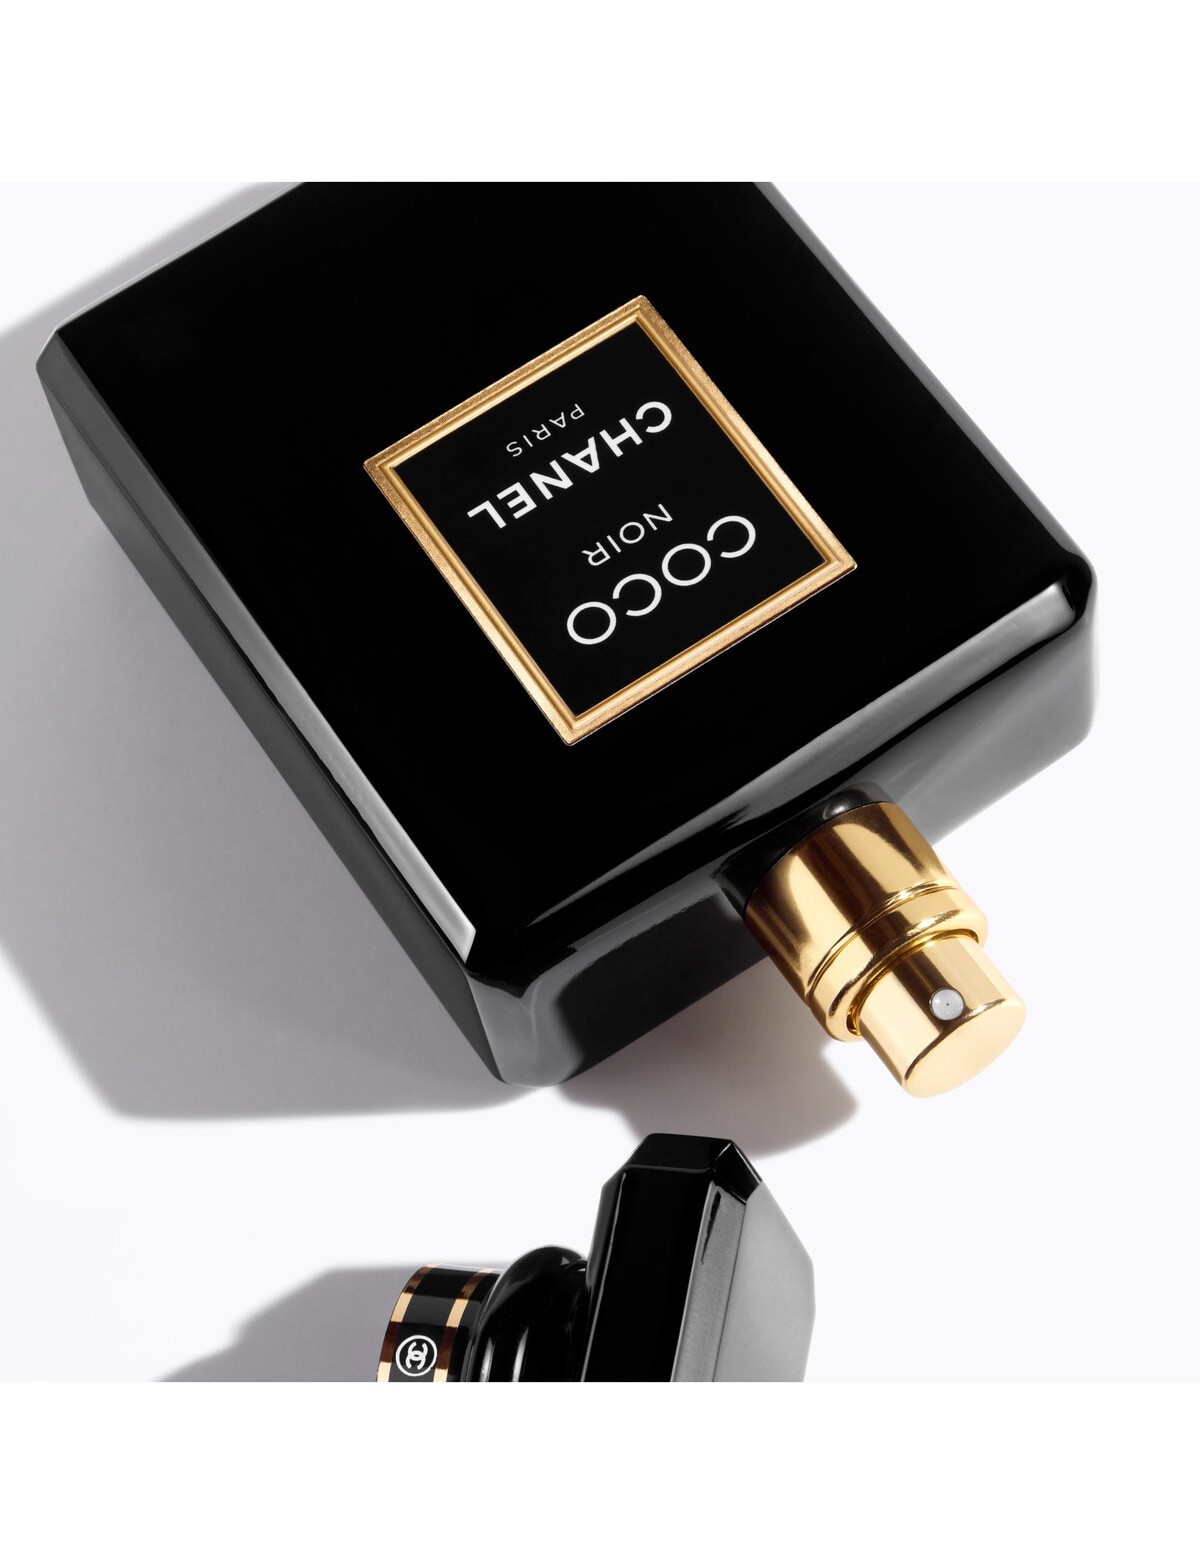 Coco Noir CHANEL PARIS 100ML Eau de Perfume for women, Beauty